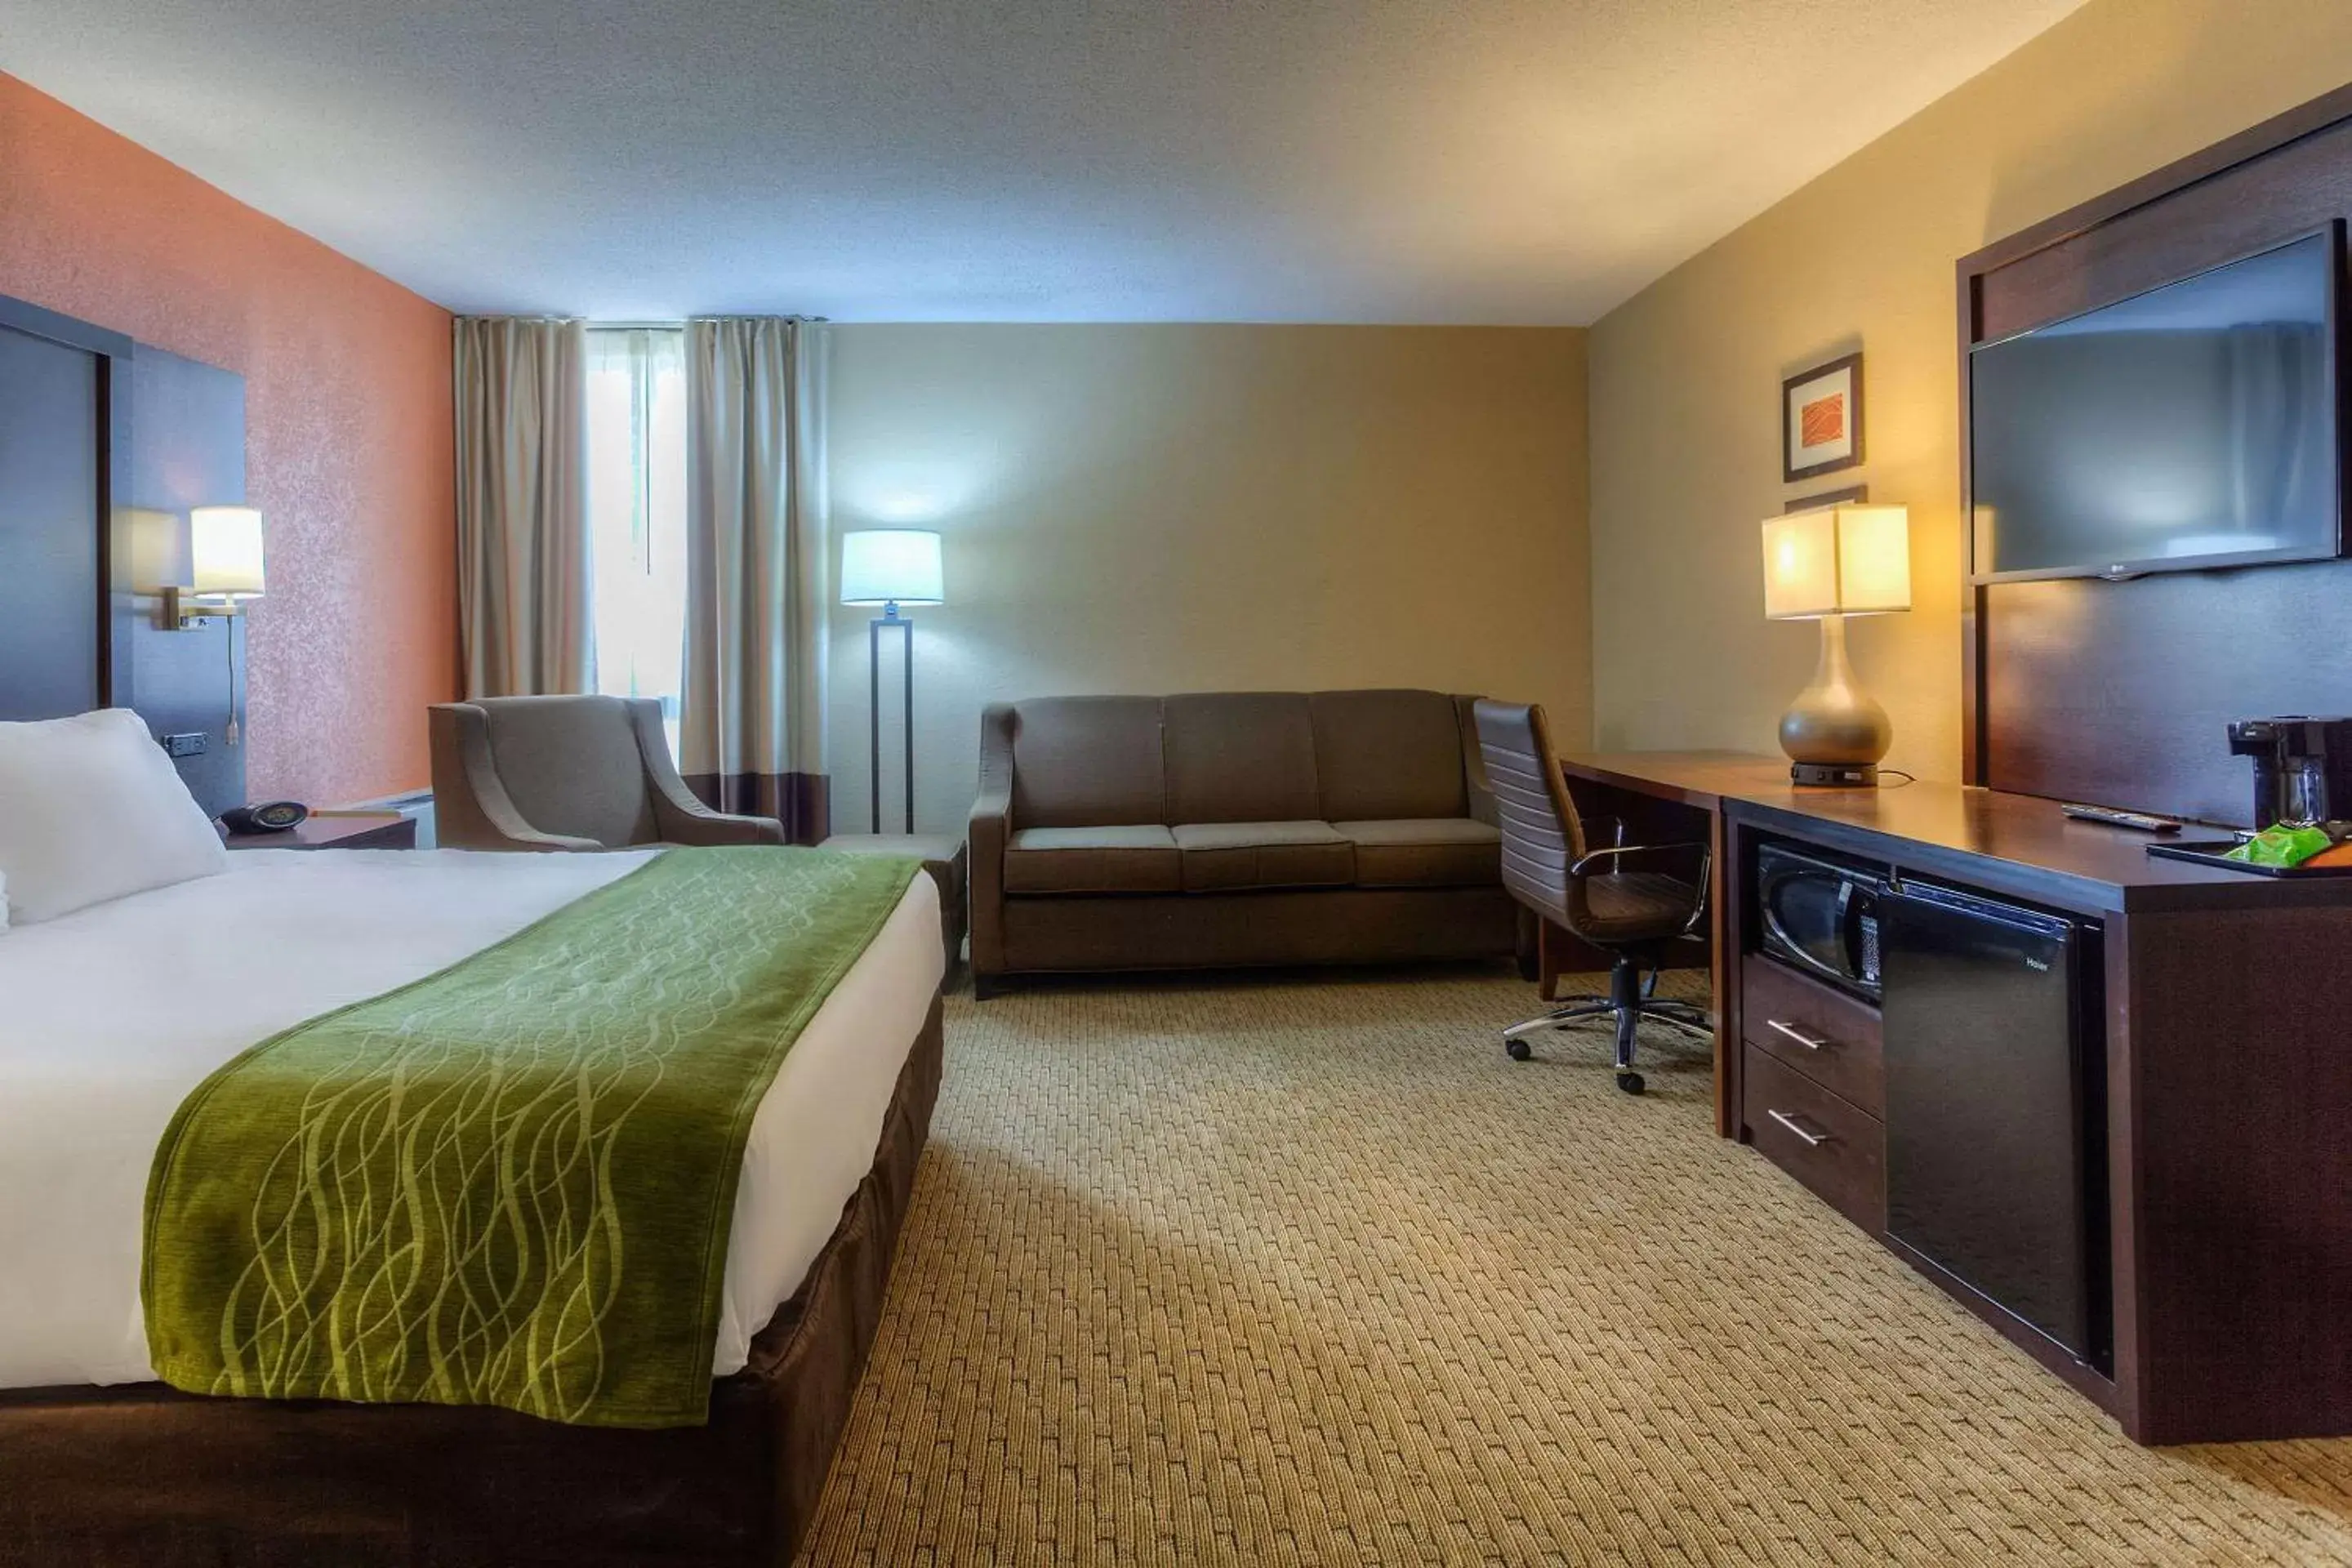 Bedroom, TV/Entertainment Center in Comfort Inn & Suites Evansville Airport